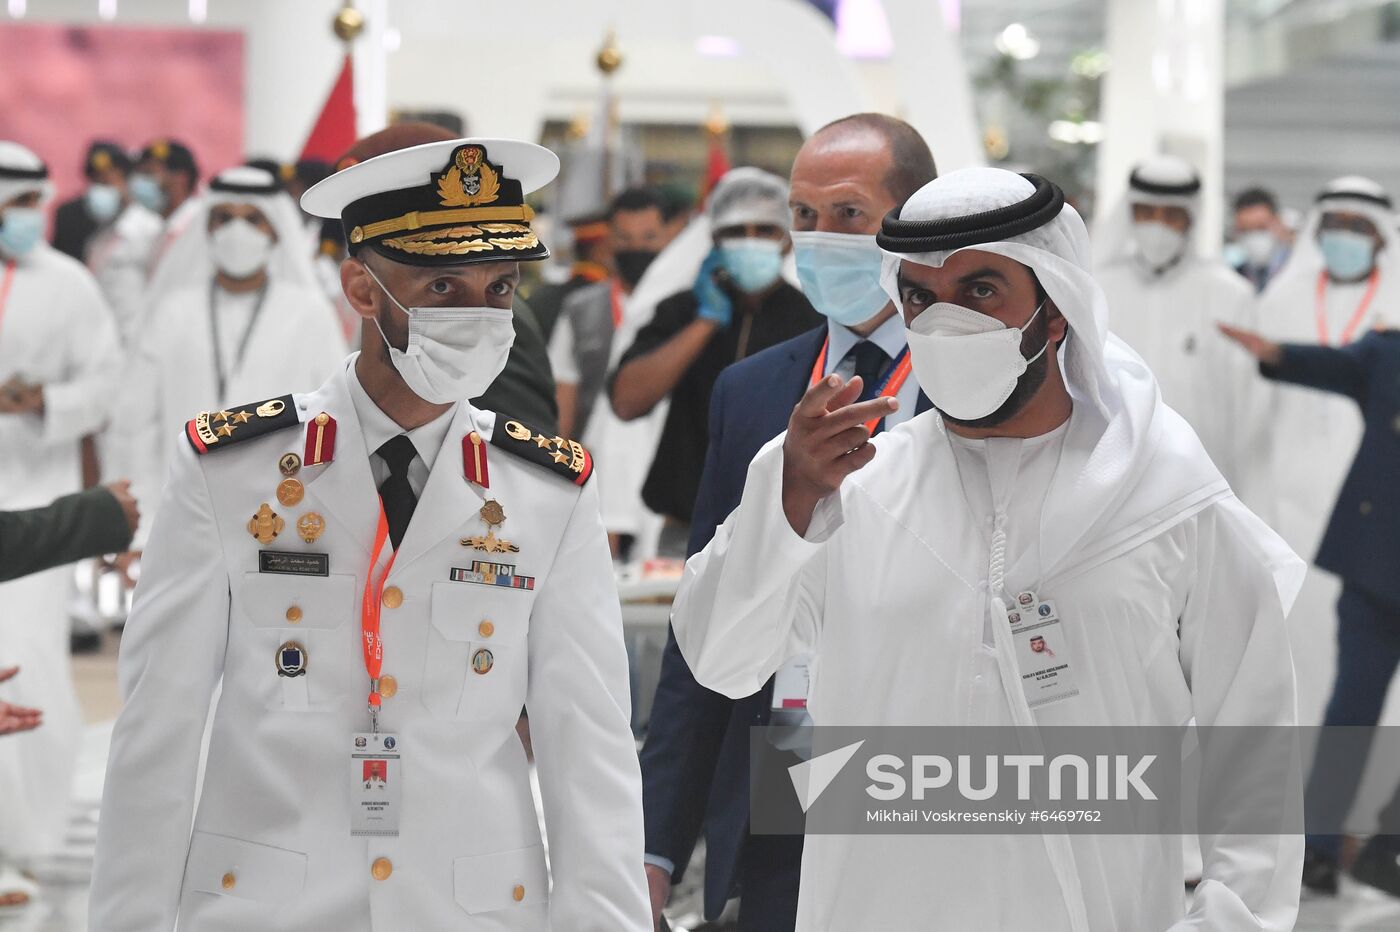 UAE IDEX Defence Exhibition